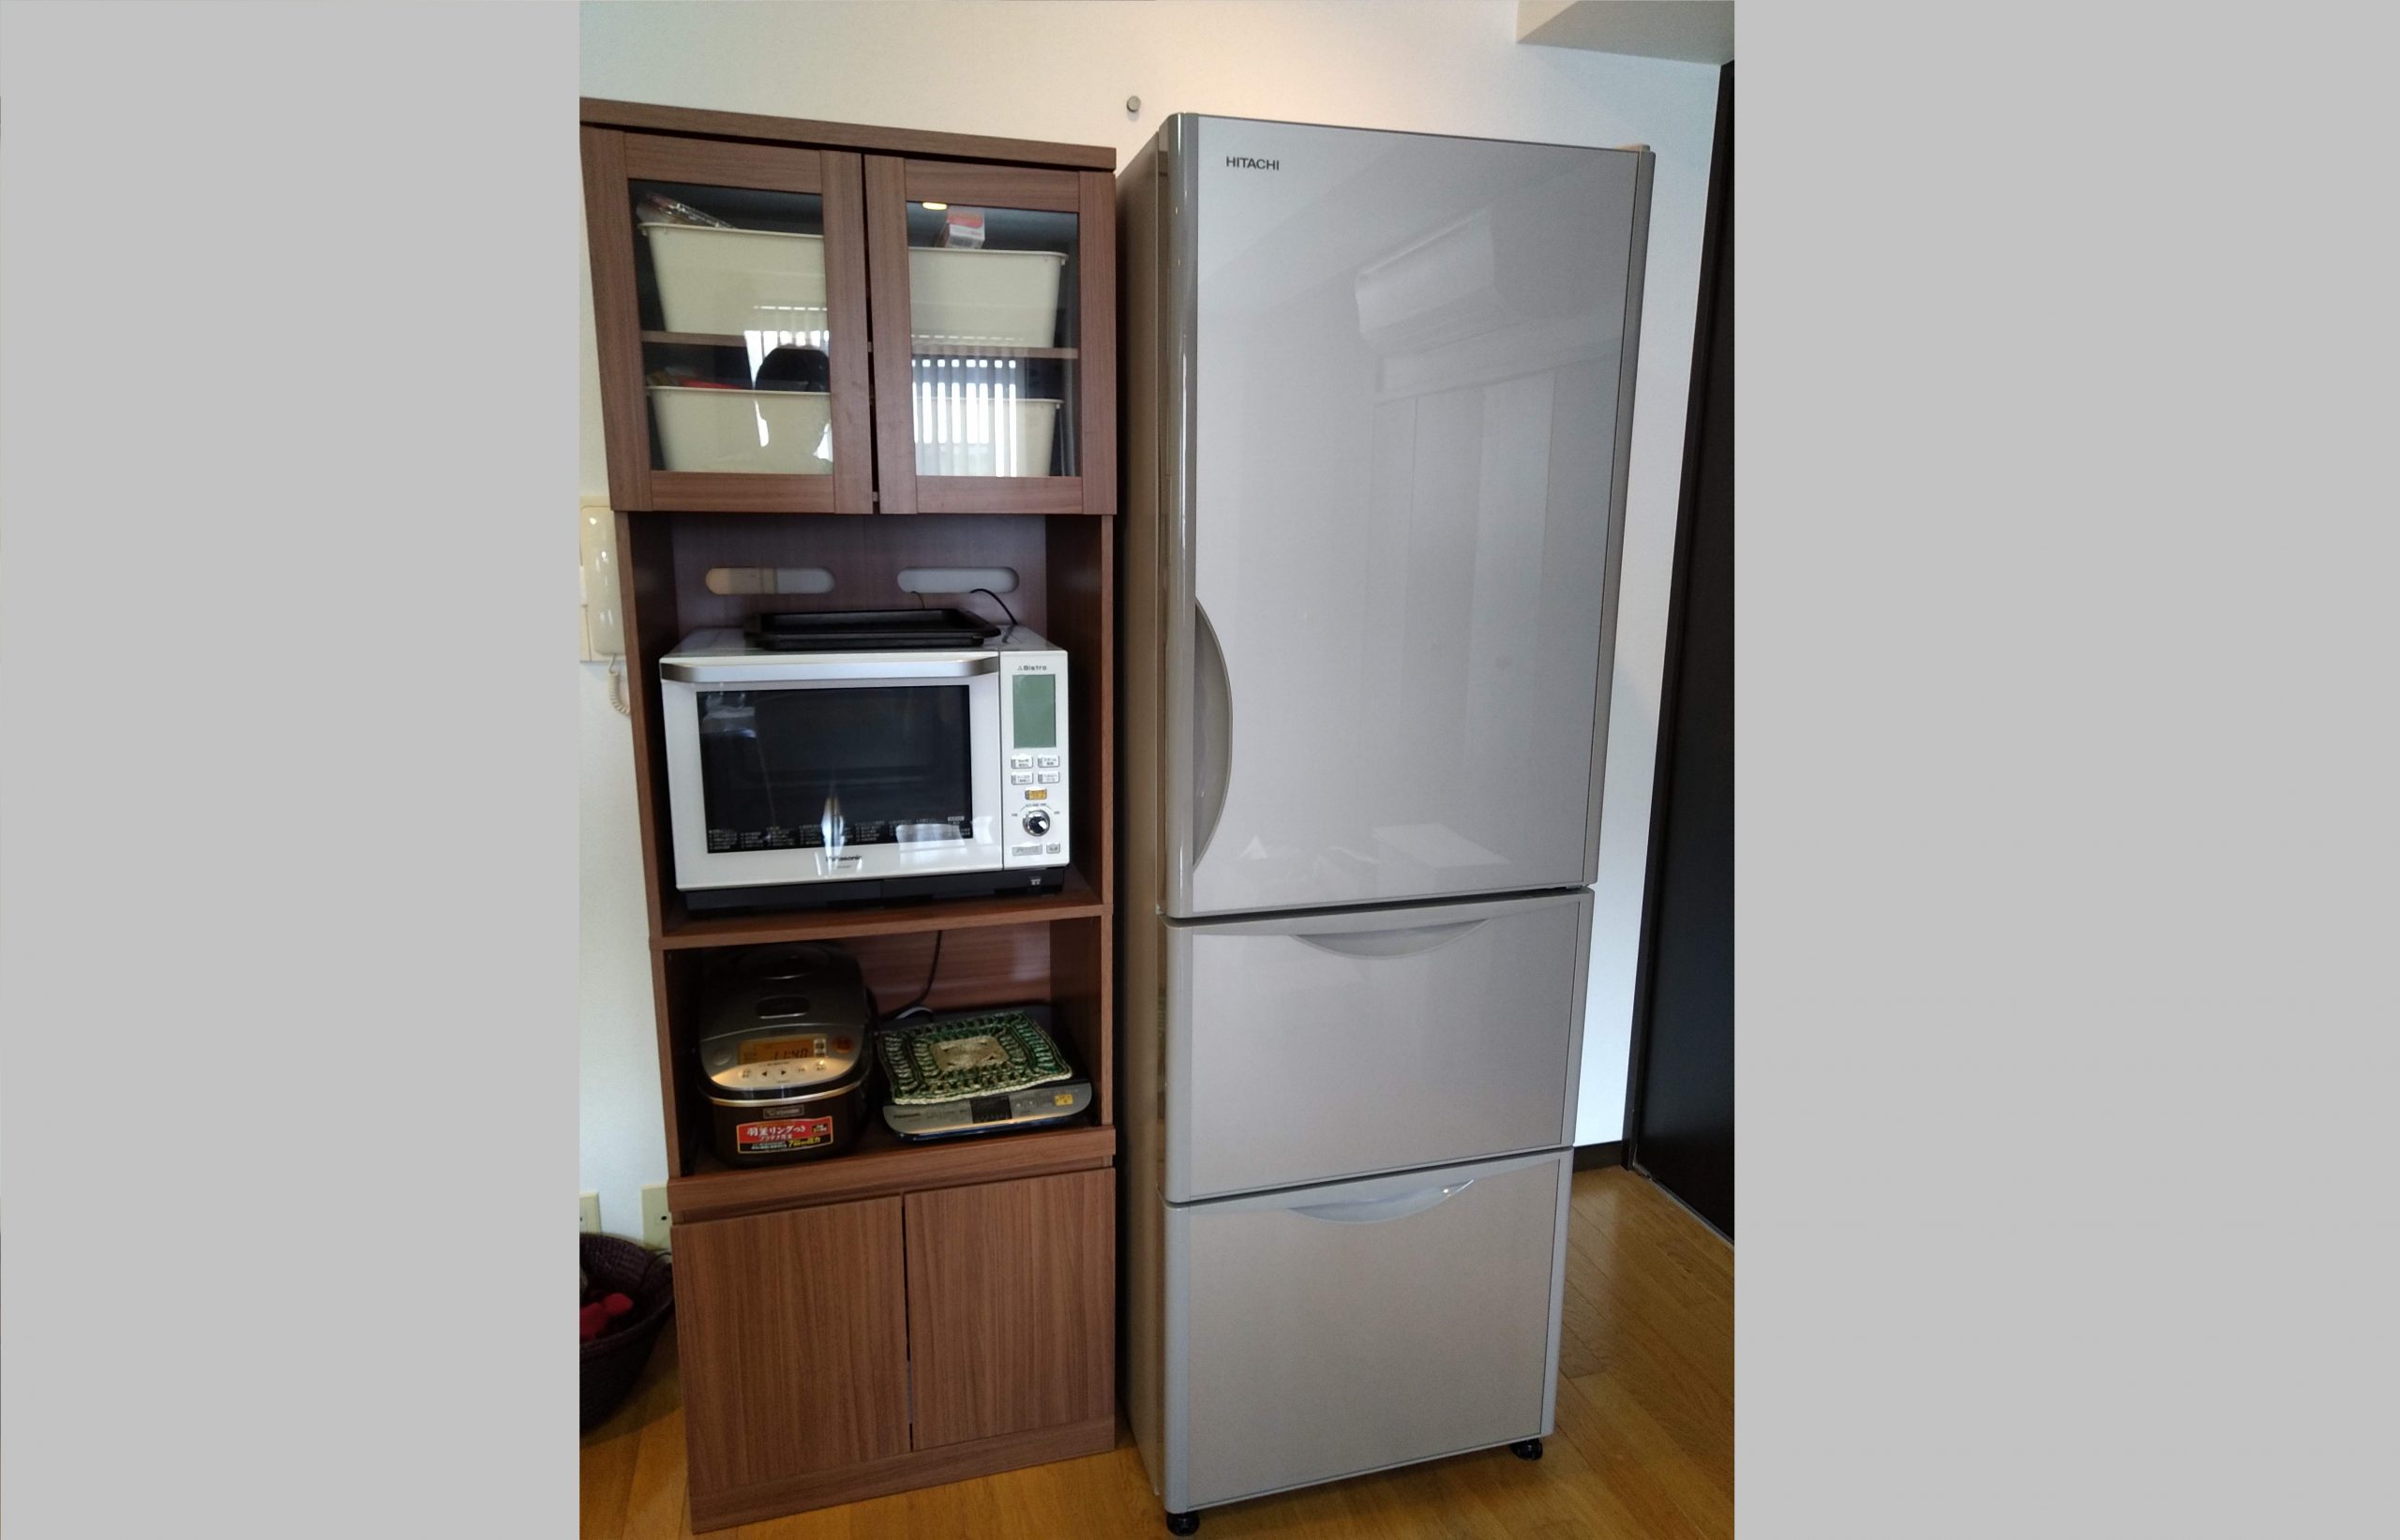 2人暮らしの冷蔵庫の大きさは 実際に悩んで買って使ってみた感想 コレ買ったブログ